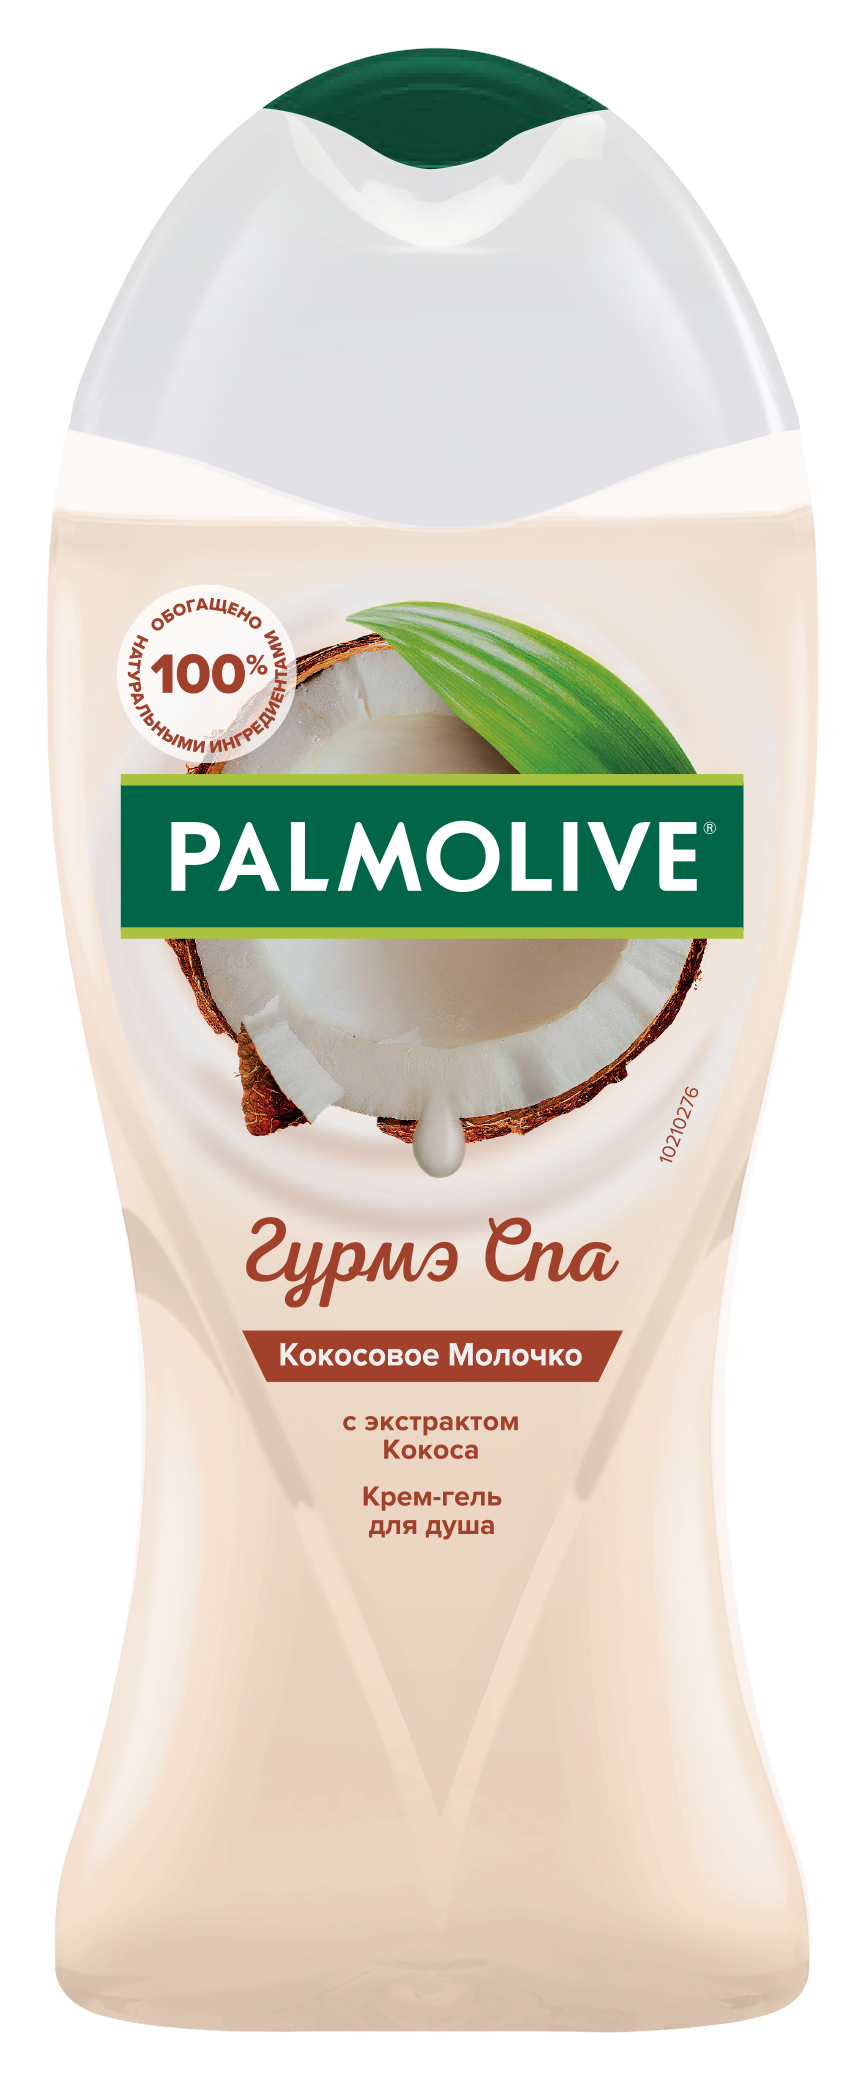 Крем-гель для душа Palmolive Гурмэ СПА кокосовое молочко, с экстрактом кокоса, 250 мл aromako свеча миндаль и кокосовое молочко 250